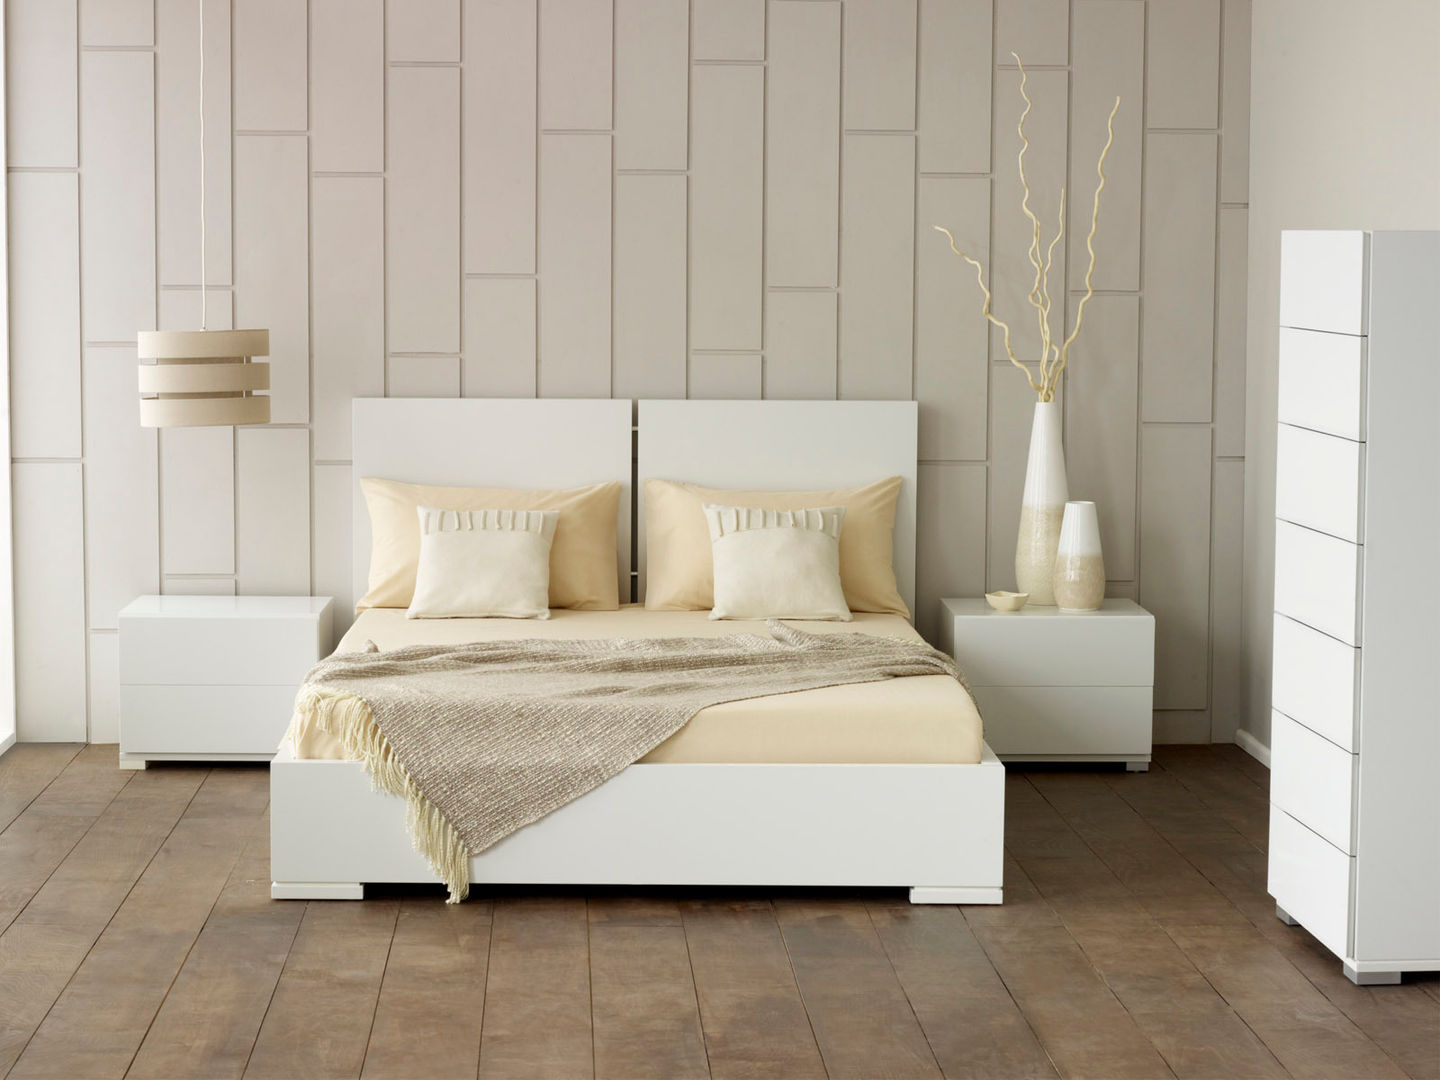 Verona White Bed homify Dormitorios de estilo moderno Camas y cabeceras